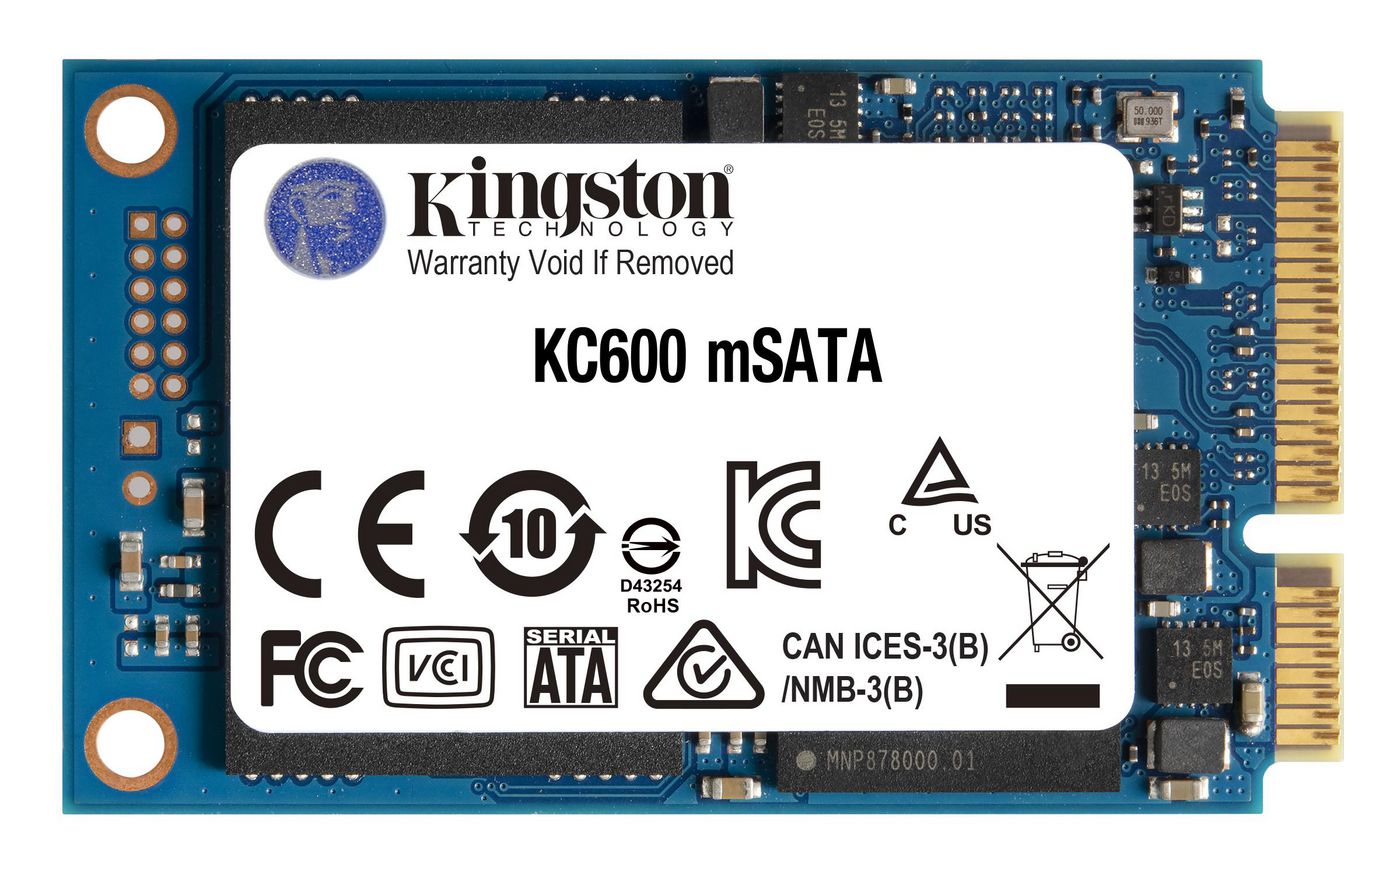 Kingston SKC600MS512G W126308741 Technology KC600 mSATA 512 GB 